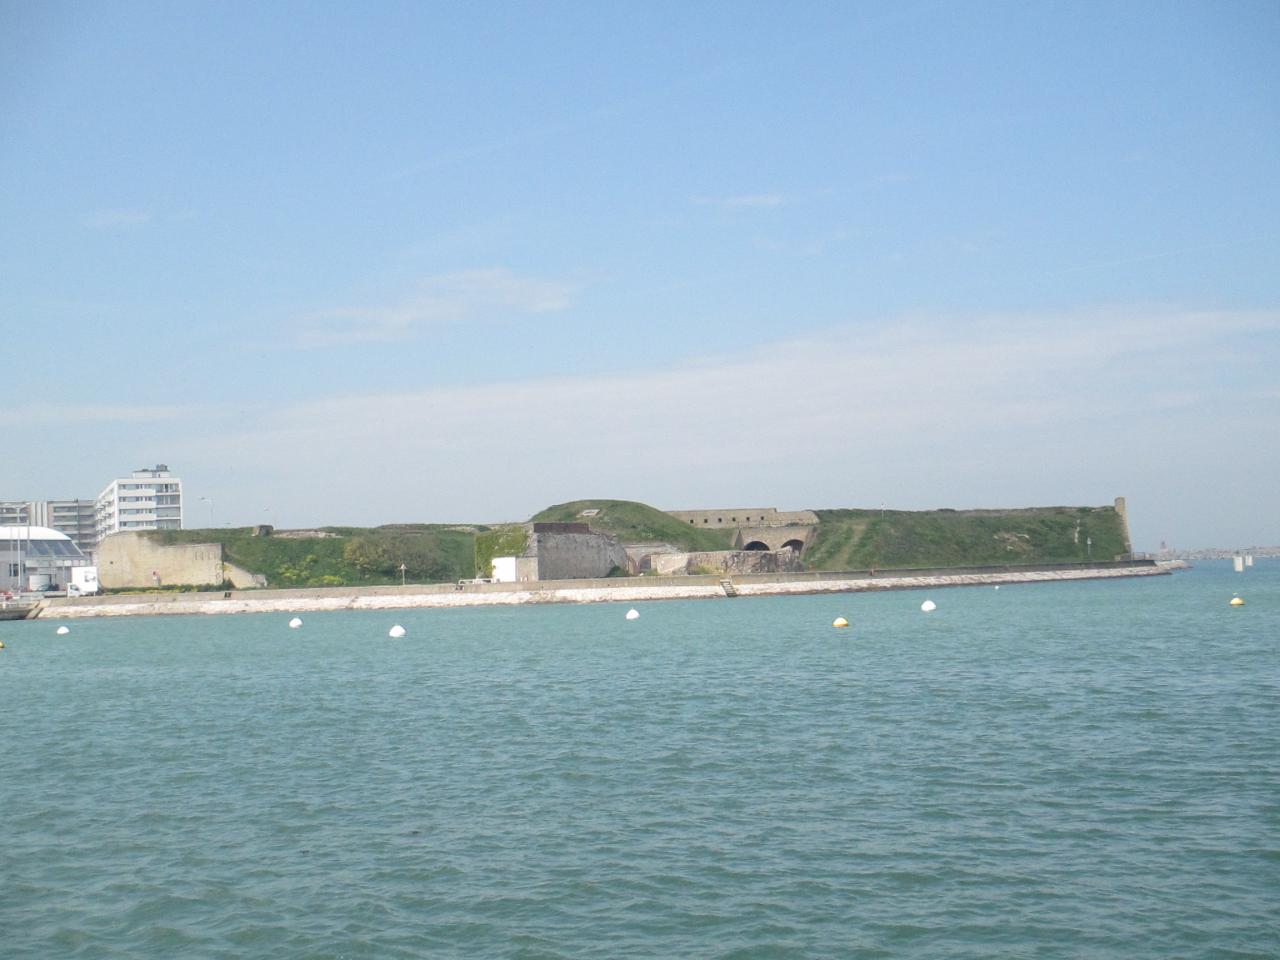 Très belle vue sur le Fort Risban, regardé du Courgain maritime de Calais